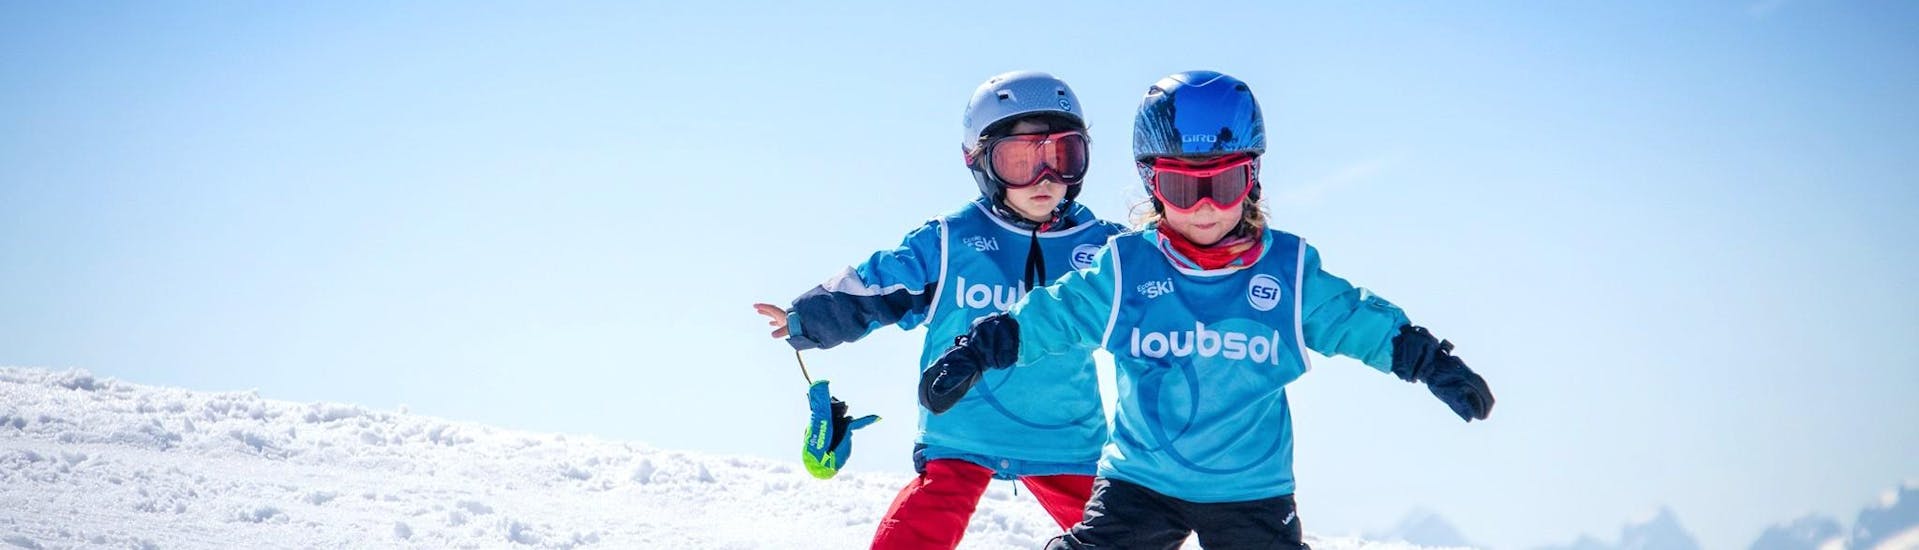 Privé skilessen voor kinderen vanaf 2 jaar - beginners.